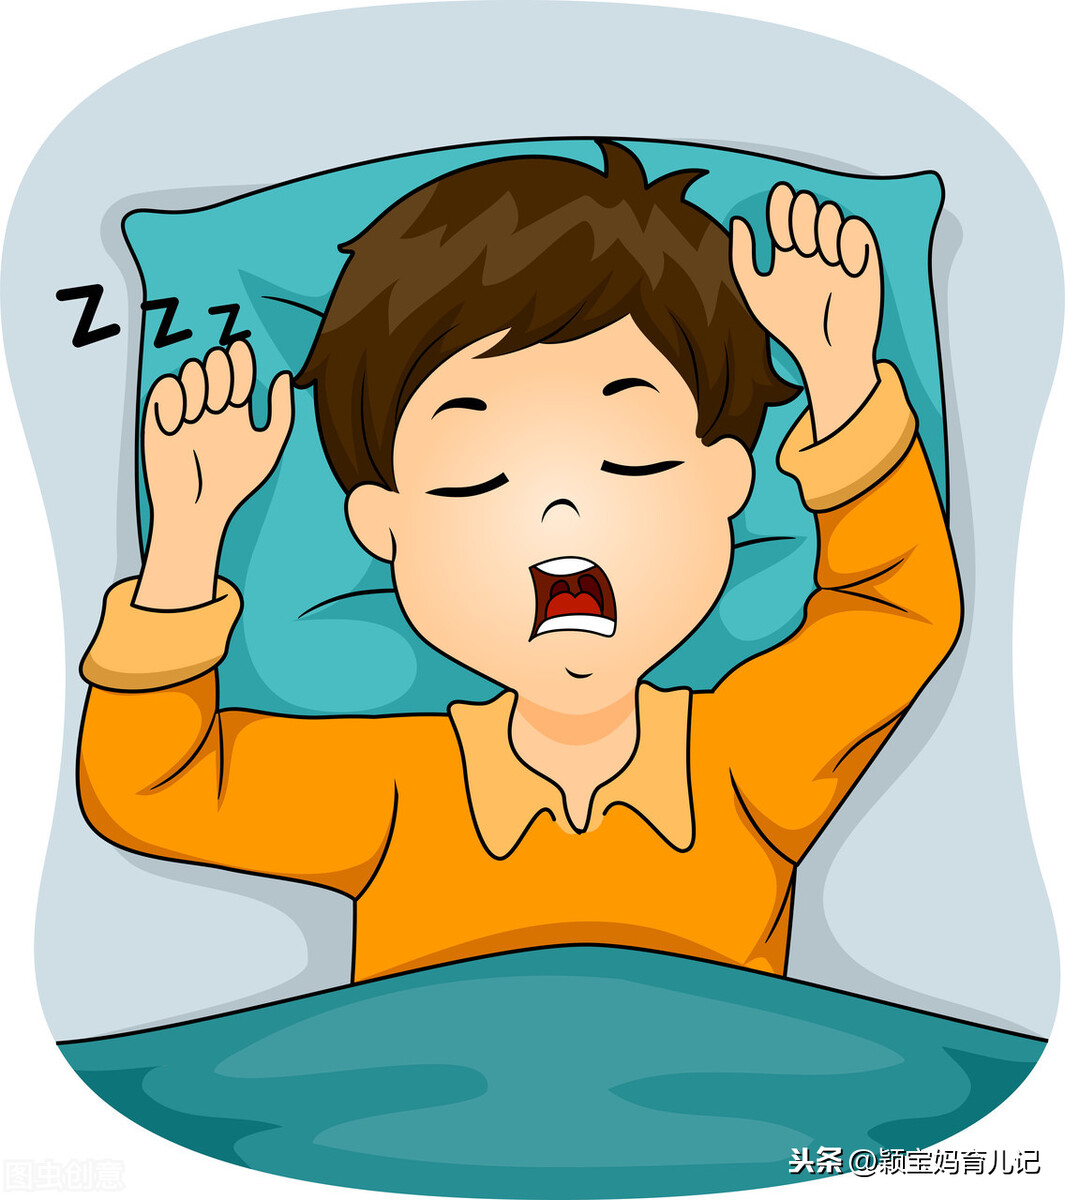 少玩手机游戏多陪家人睡觉_睡觉游戏app_陪伴睡觉的软件